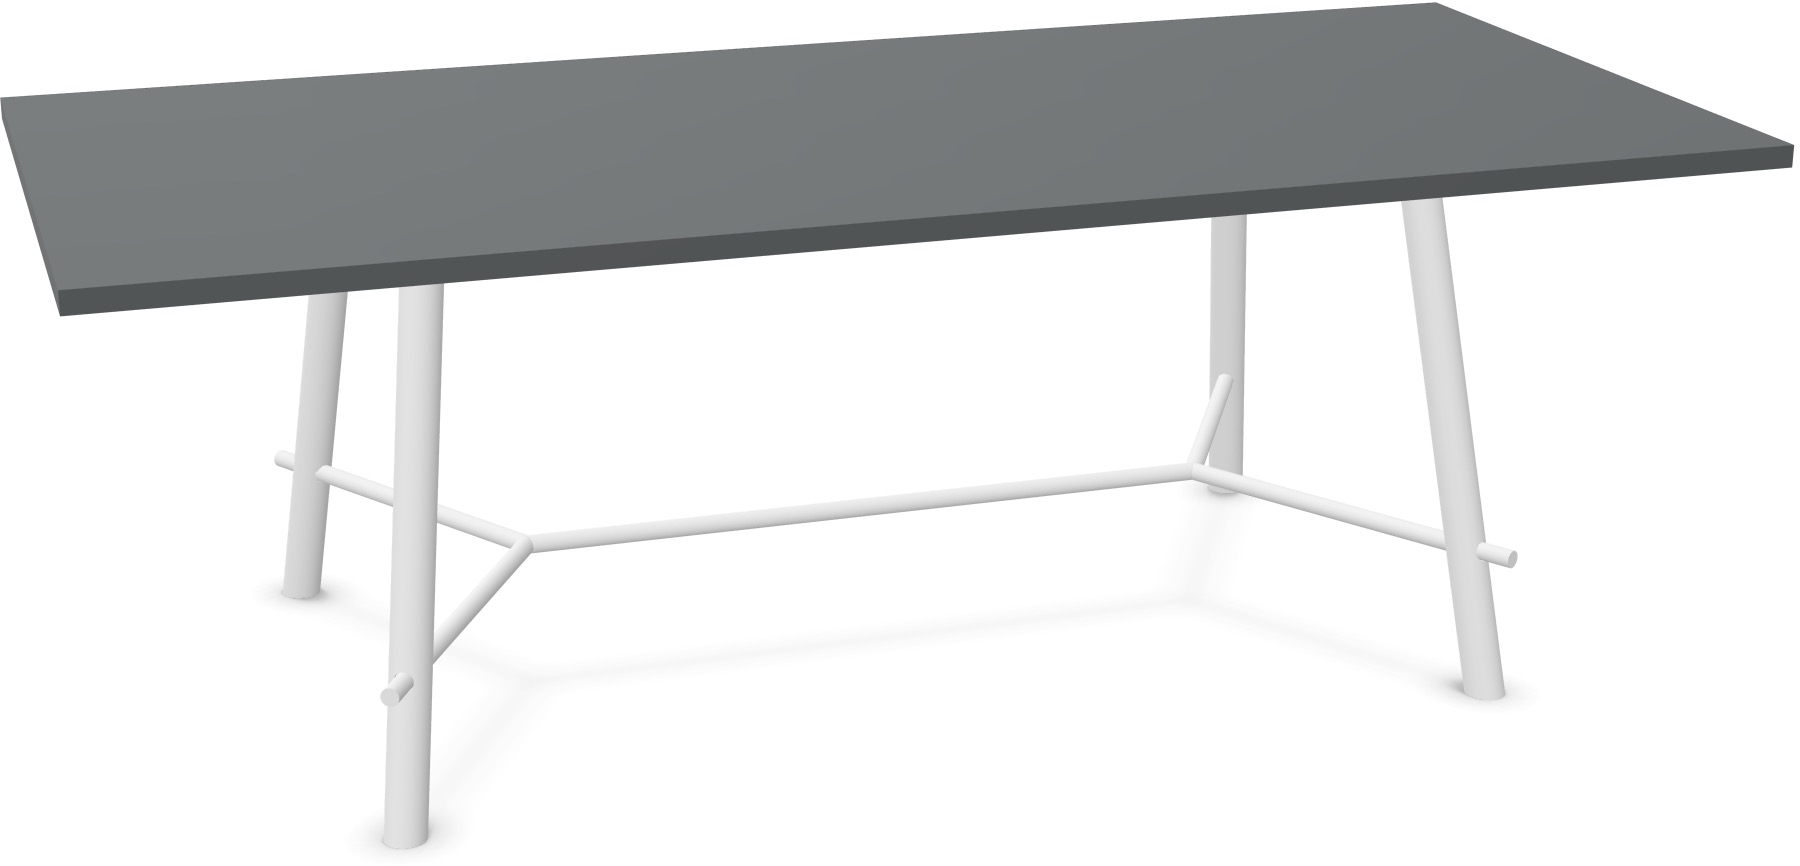 Record Living Maxi Tisch in Anthrazit / Eiche weiss präsentiert im Onlineshop von KAQTU Design AG. Esstisch ist von Infiniti Design